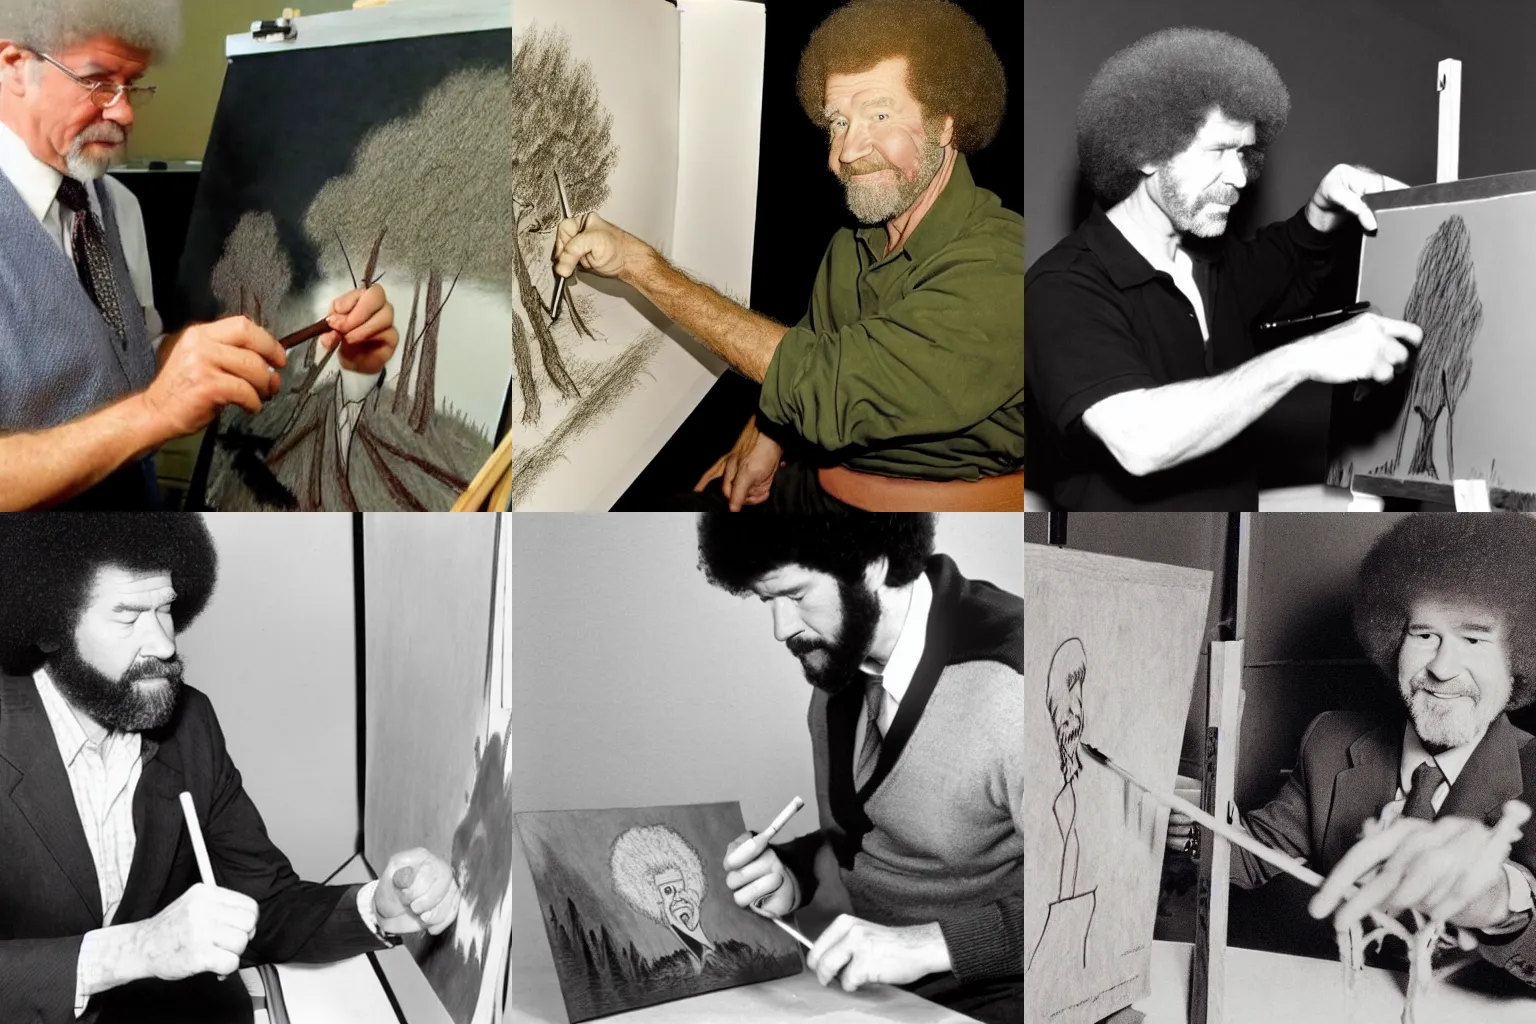 Prompt: Bob Ross drawing a stickman